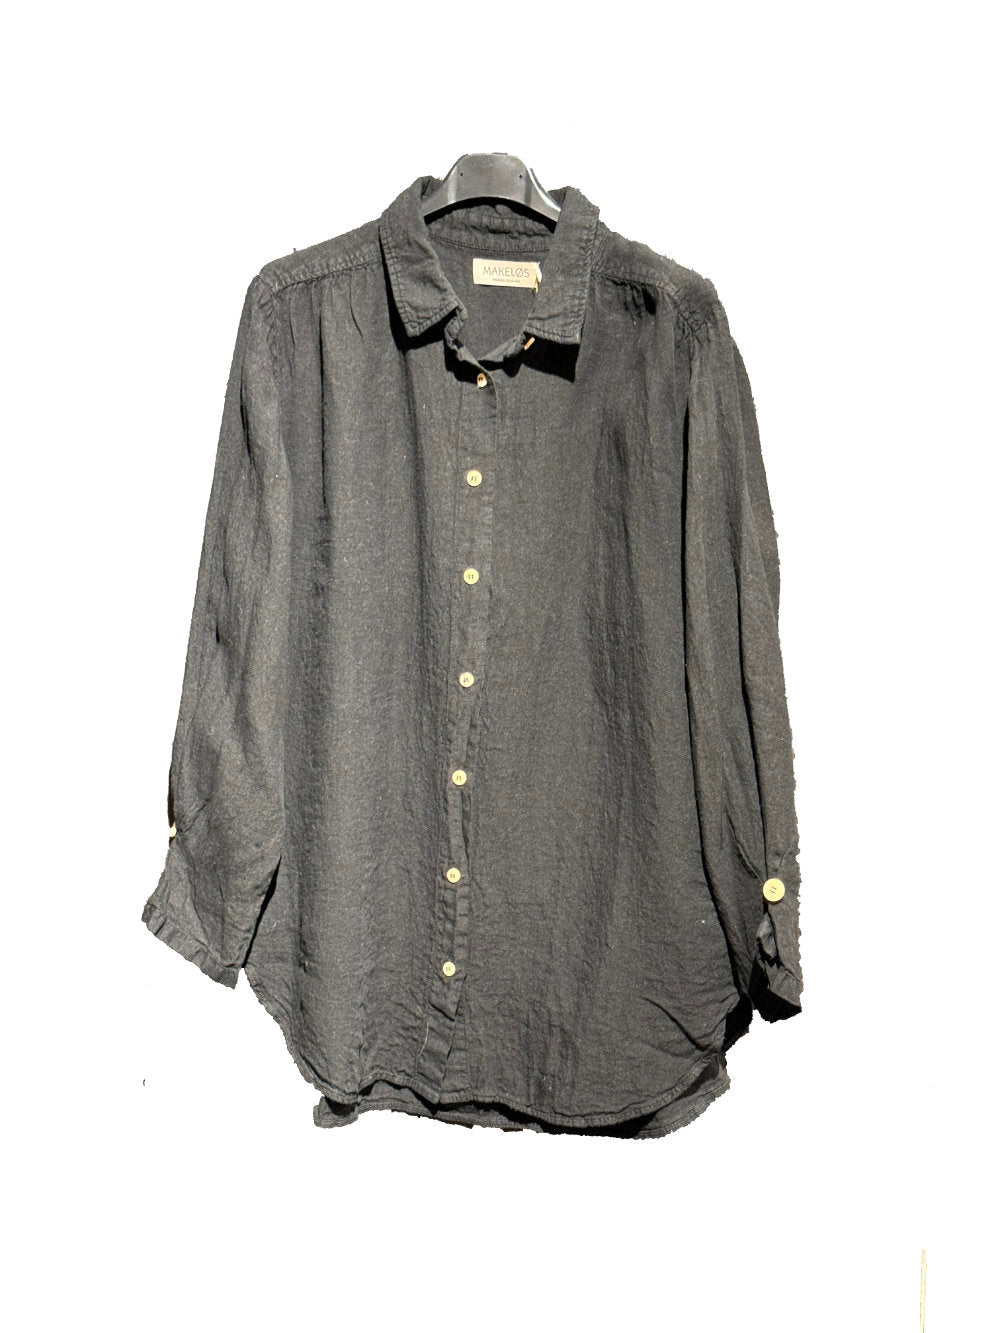 Skjorte i 100% lin - svart - Lindesnes - Many Colors